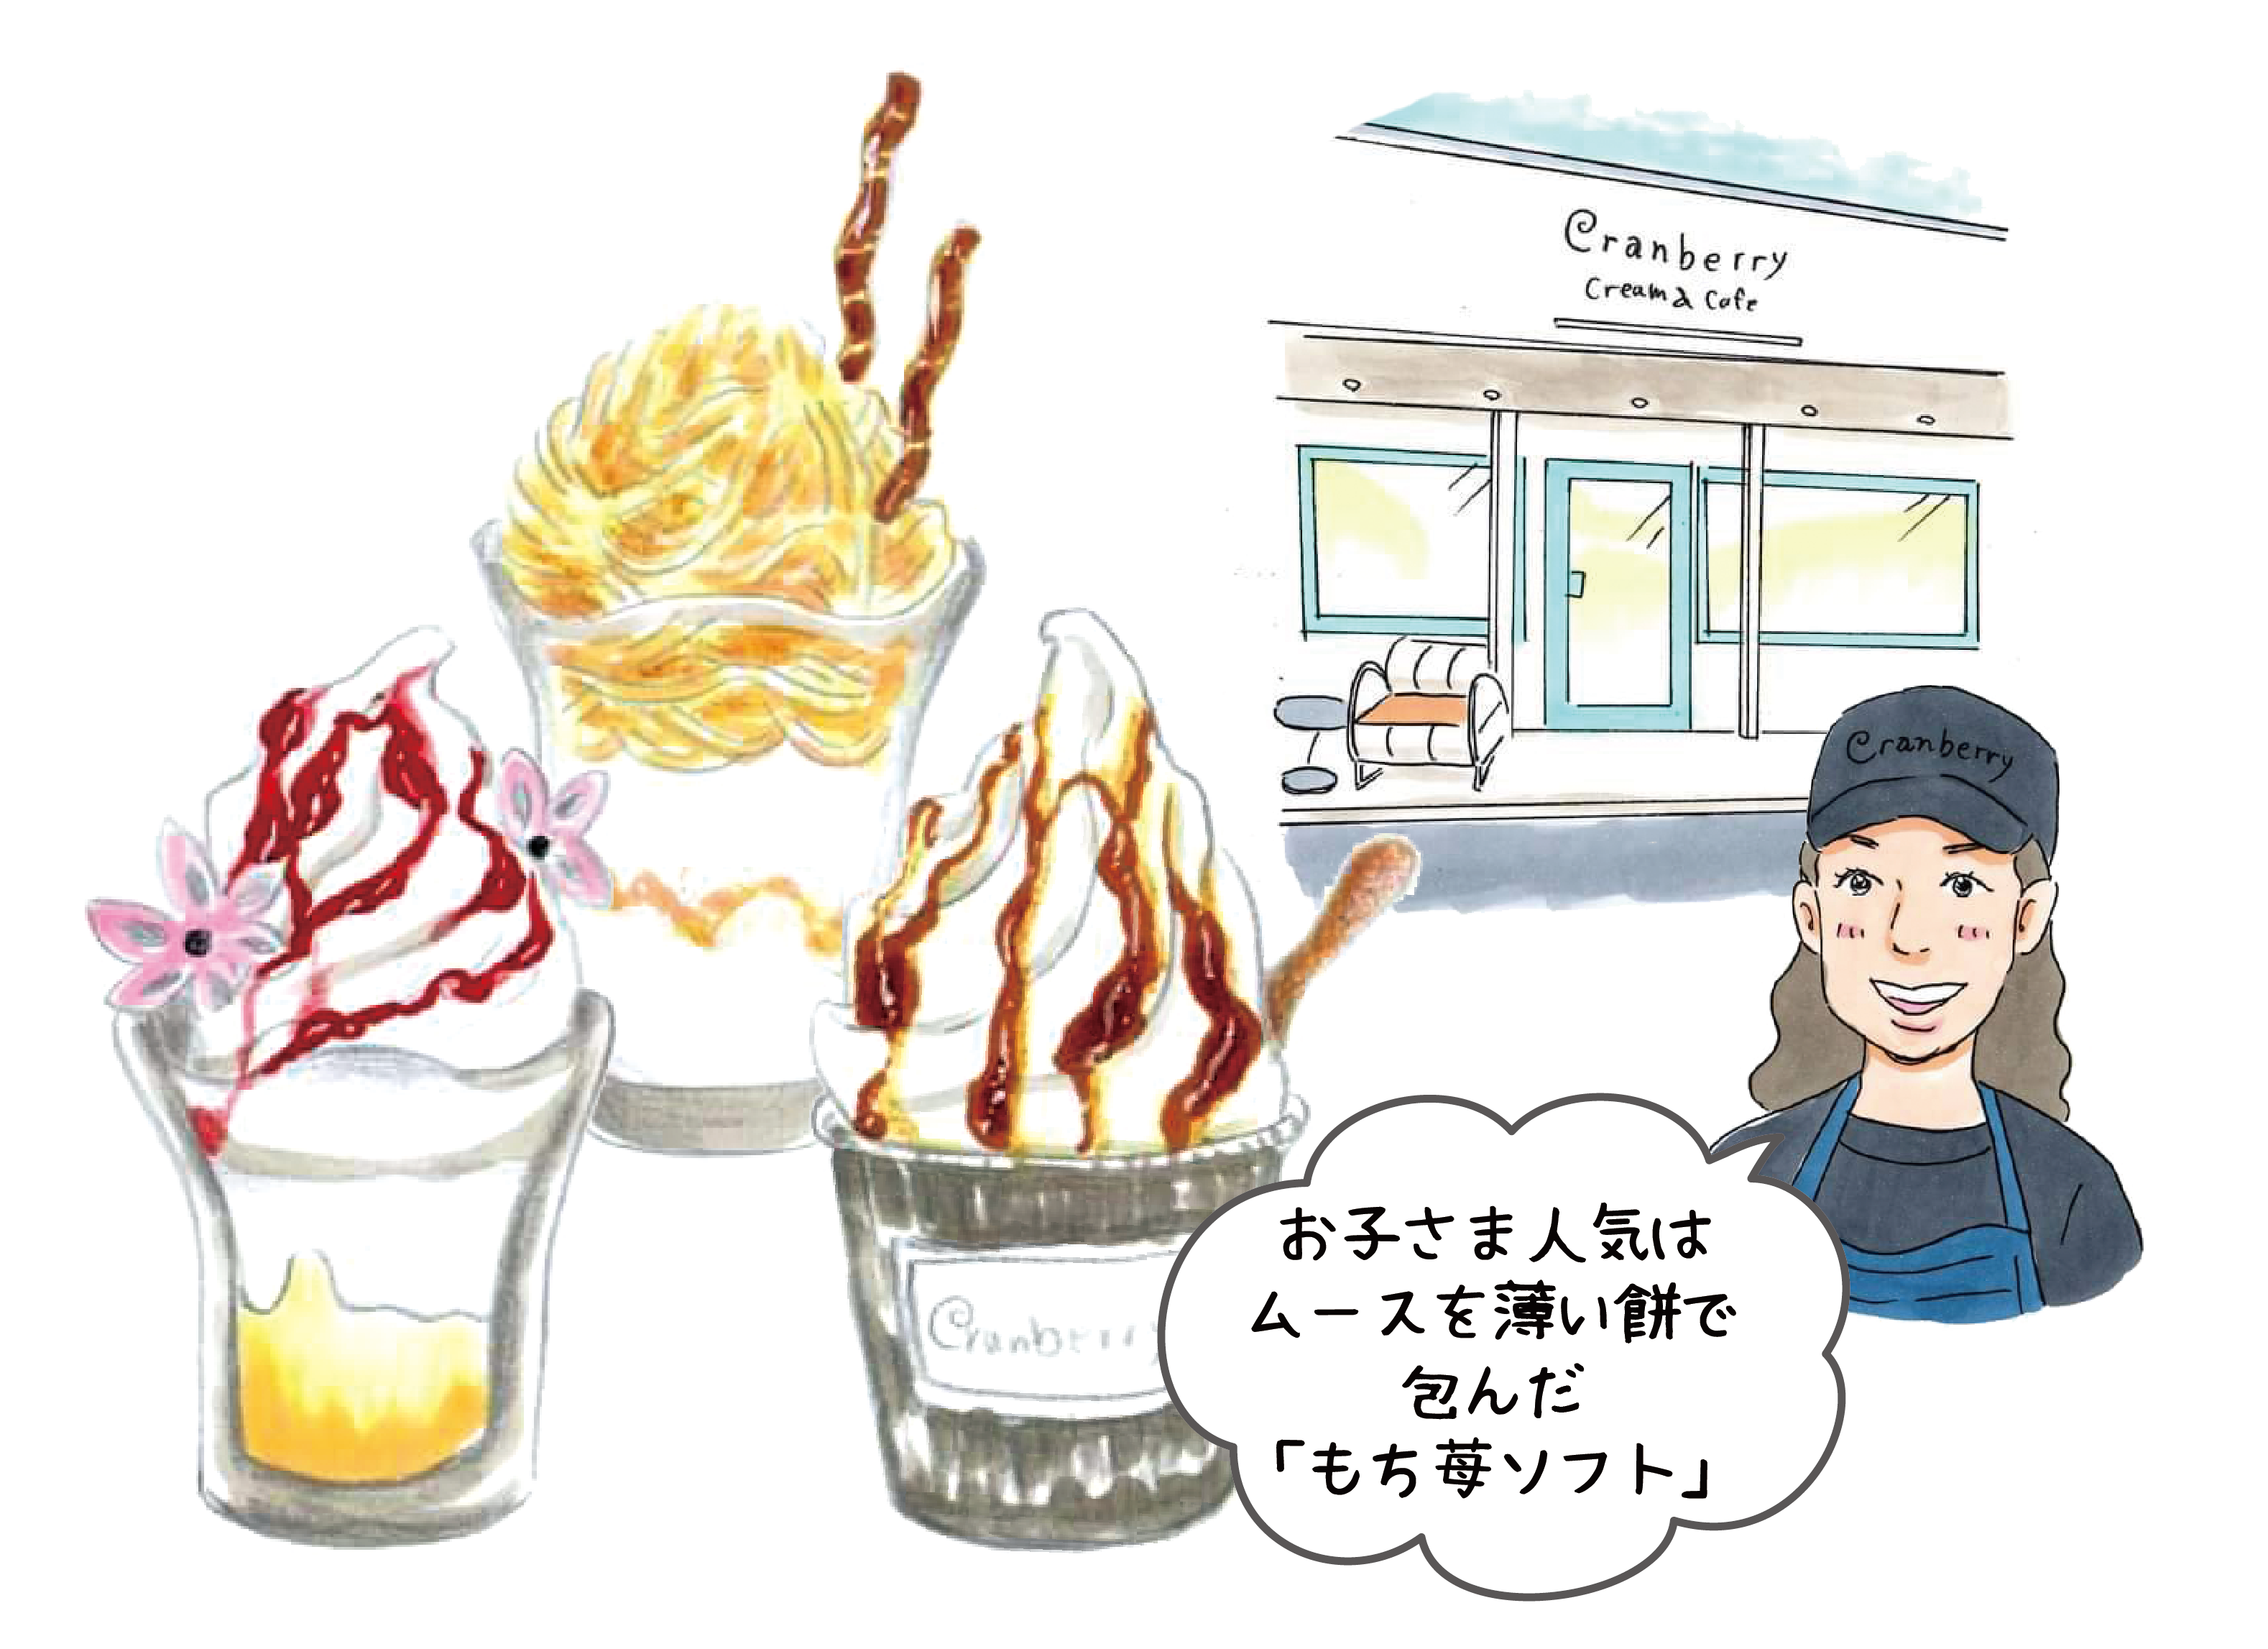 Cranberry Cream＆Cafe